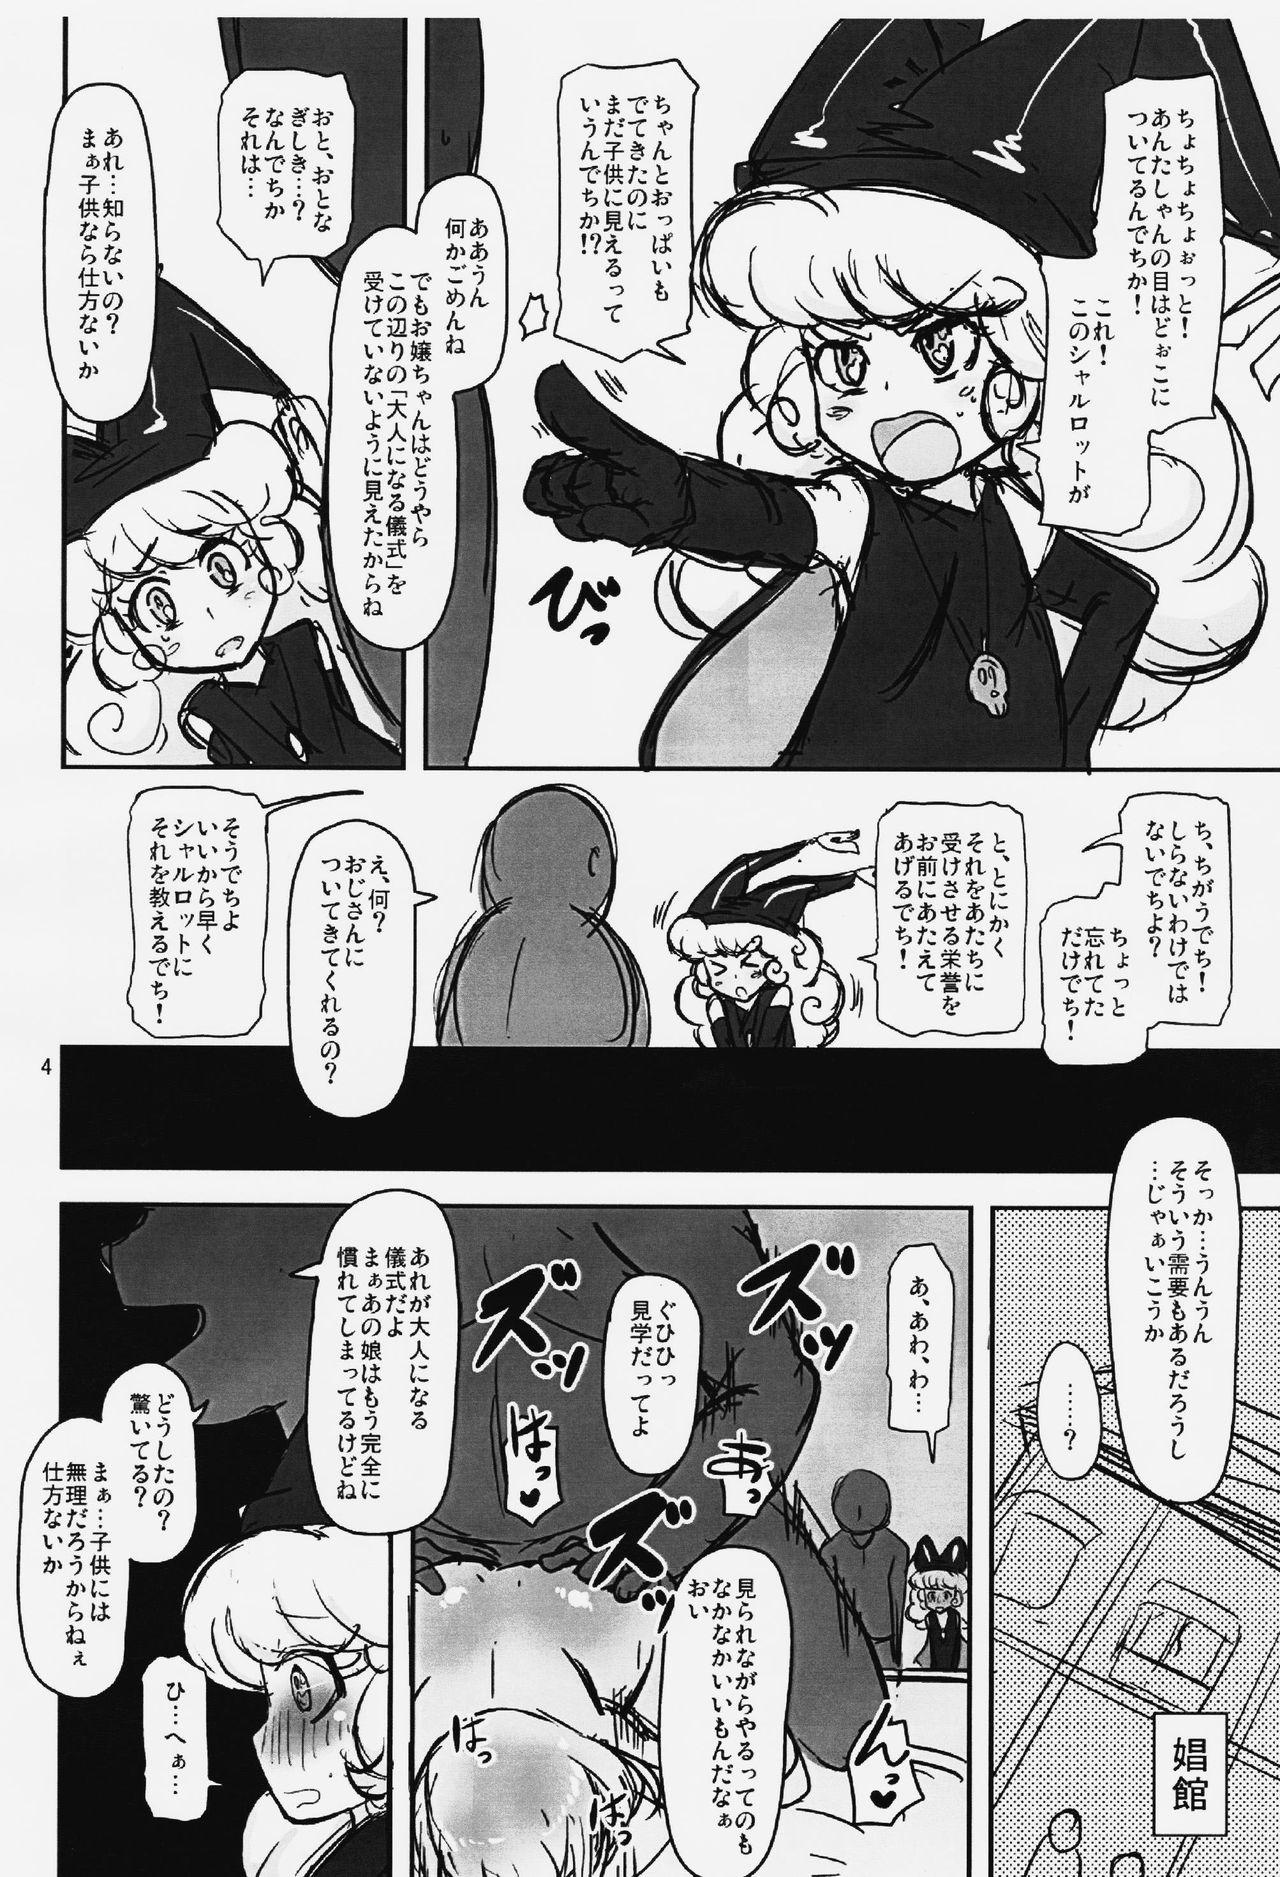 Anal Play Dechiko Bon Haku - Seiken densetsu 3 Negra - Page 3